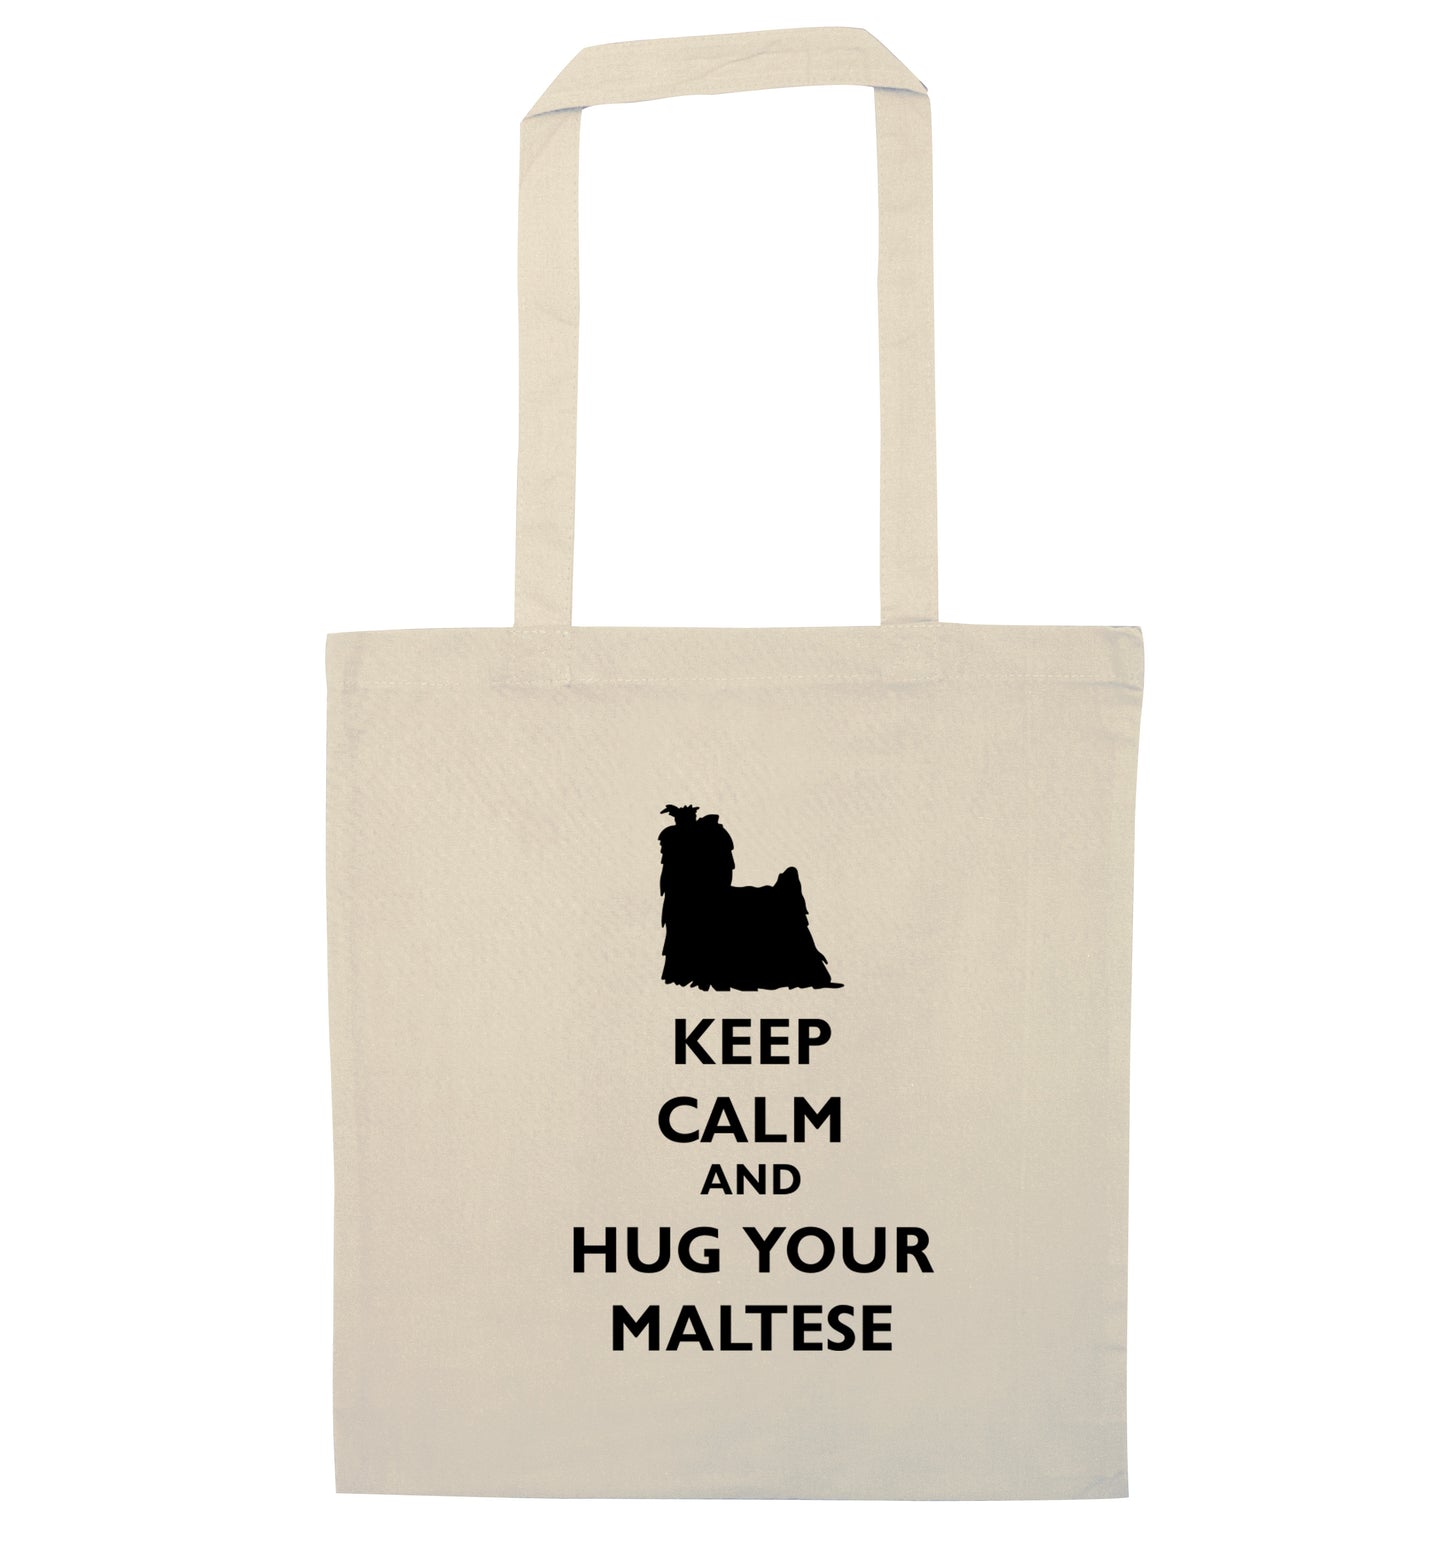 Keep calm and hug your maltese natural tote bag